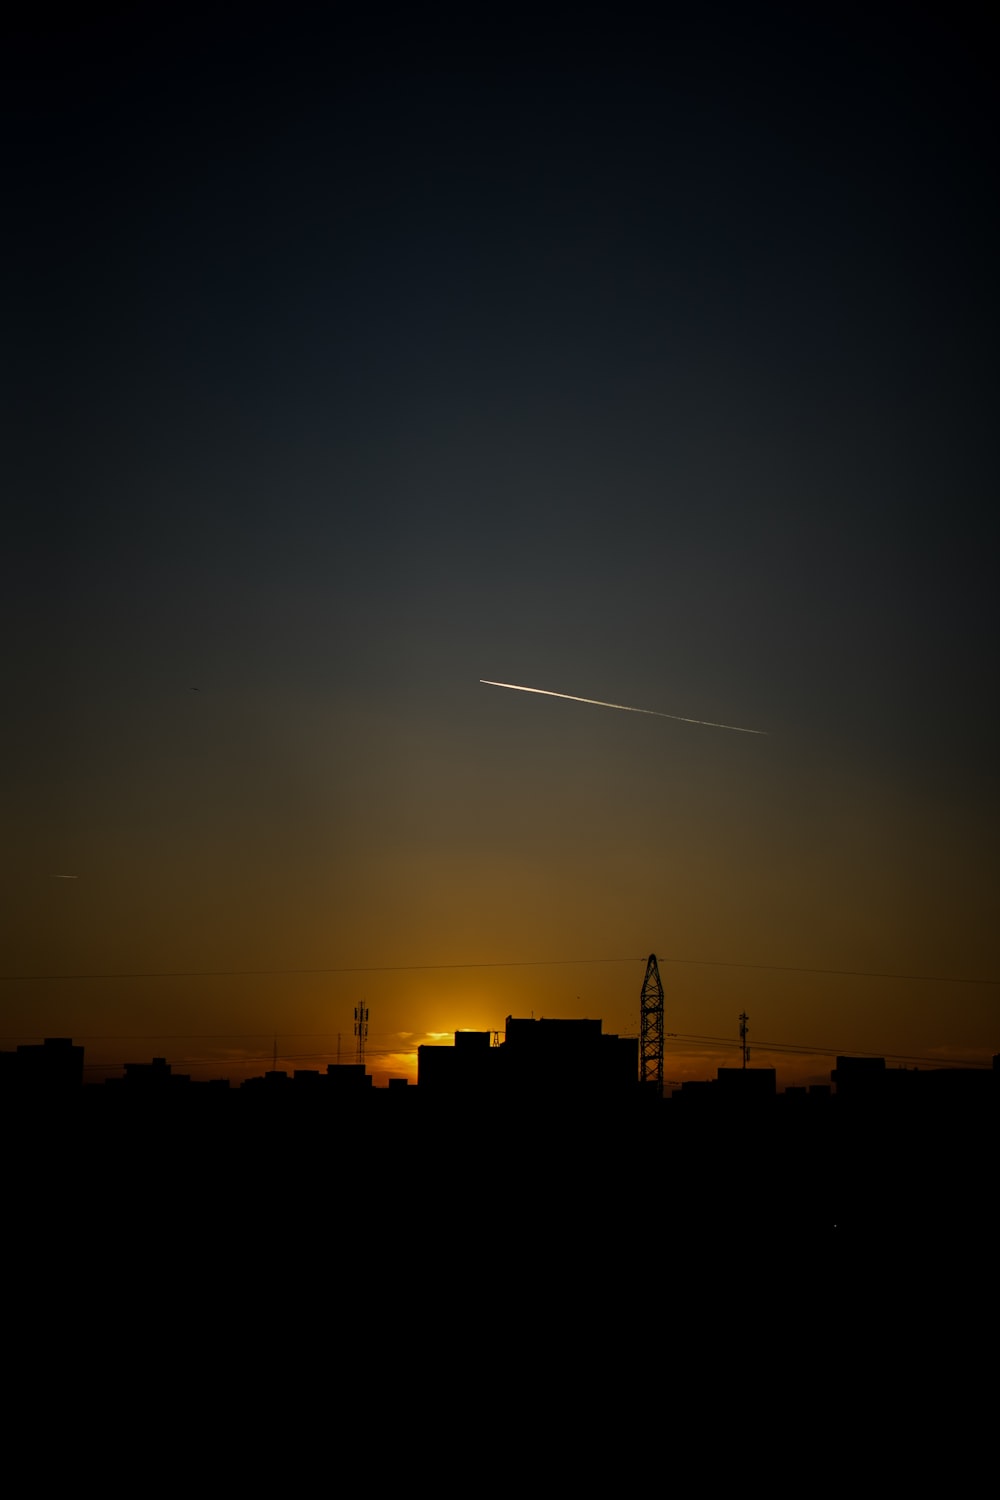 un avion survolant une ville au coucher du soleil